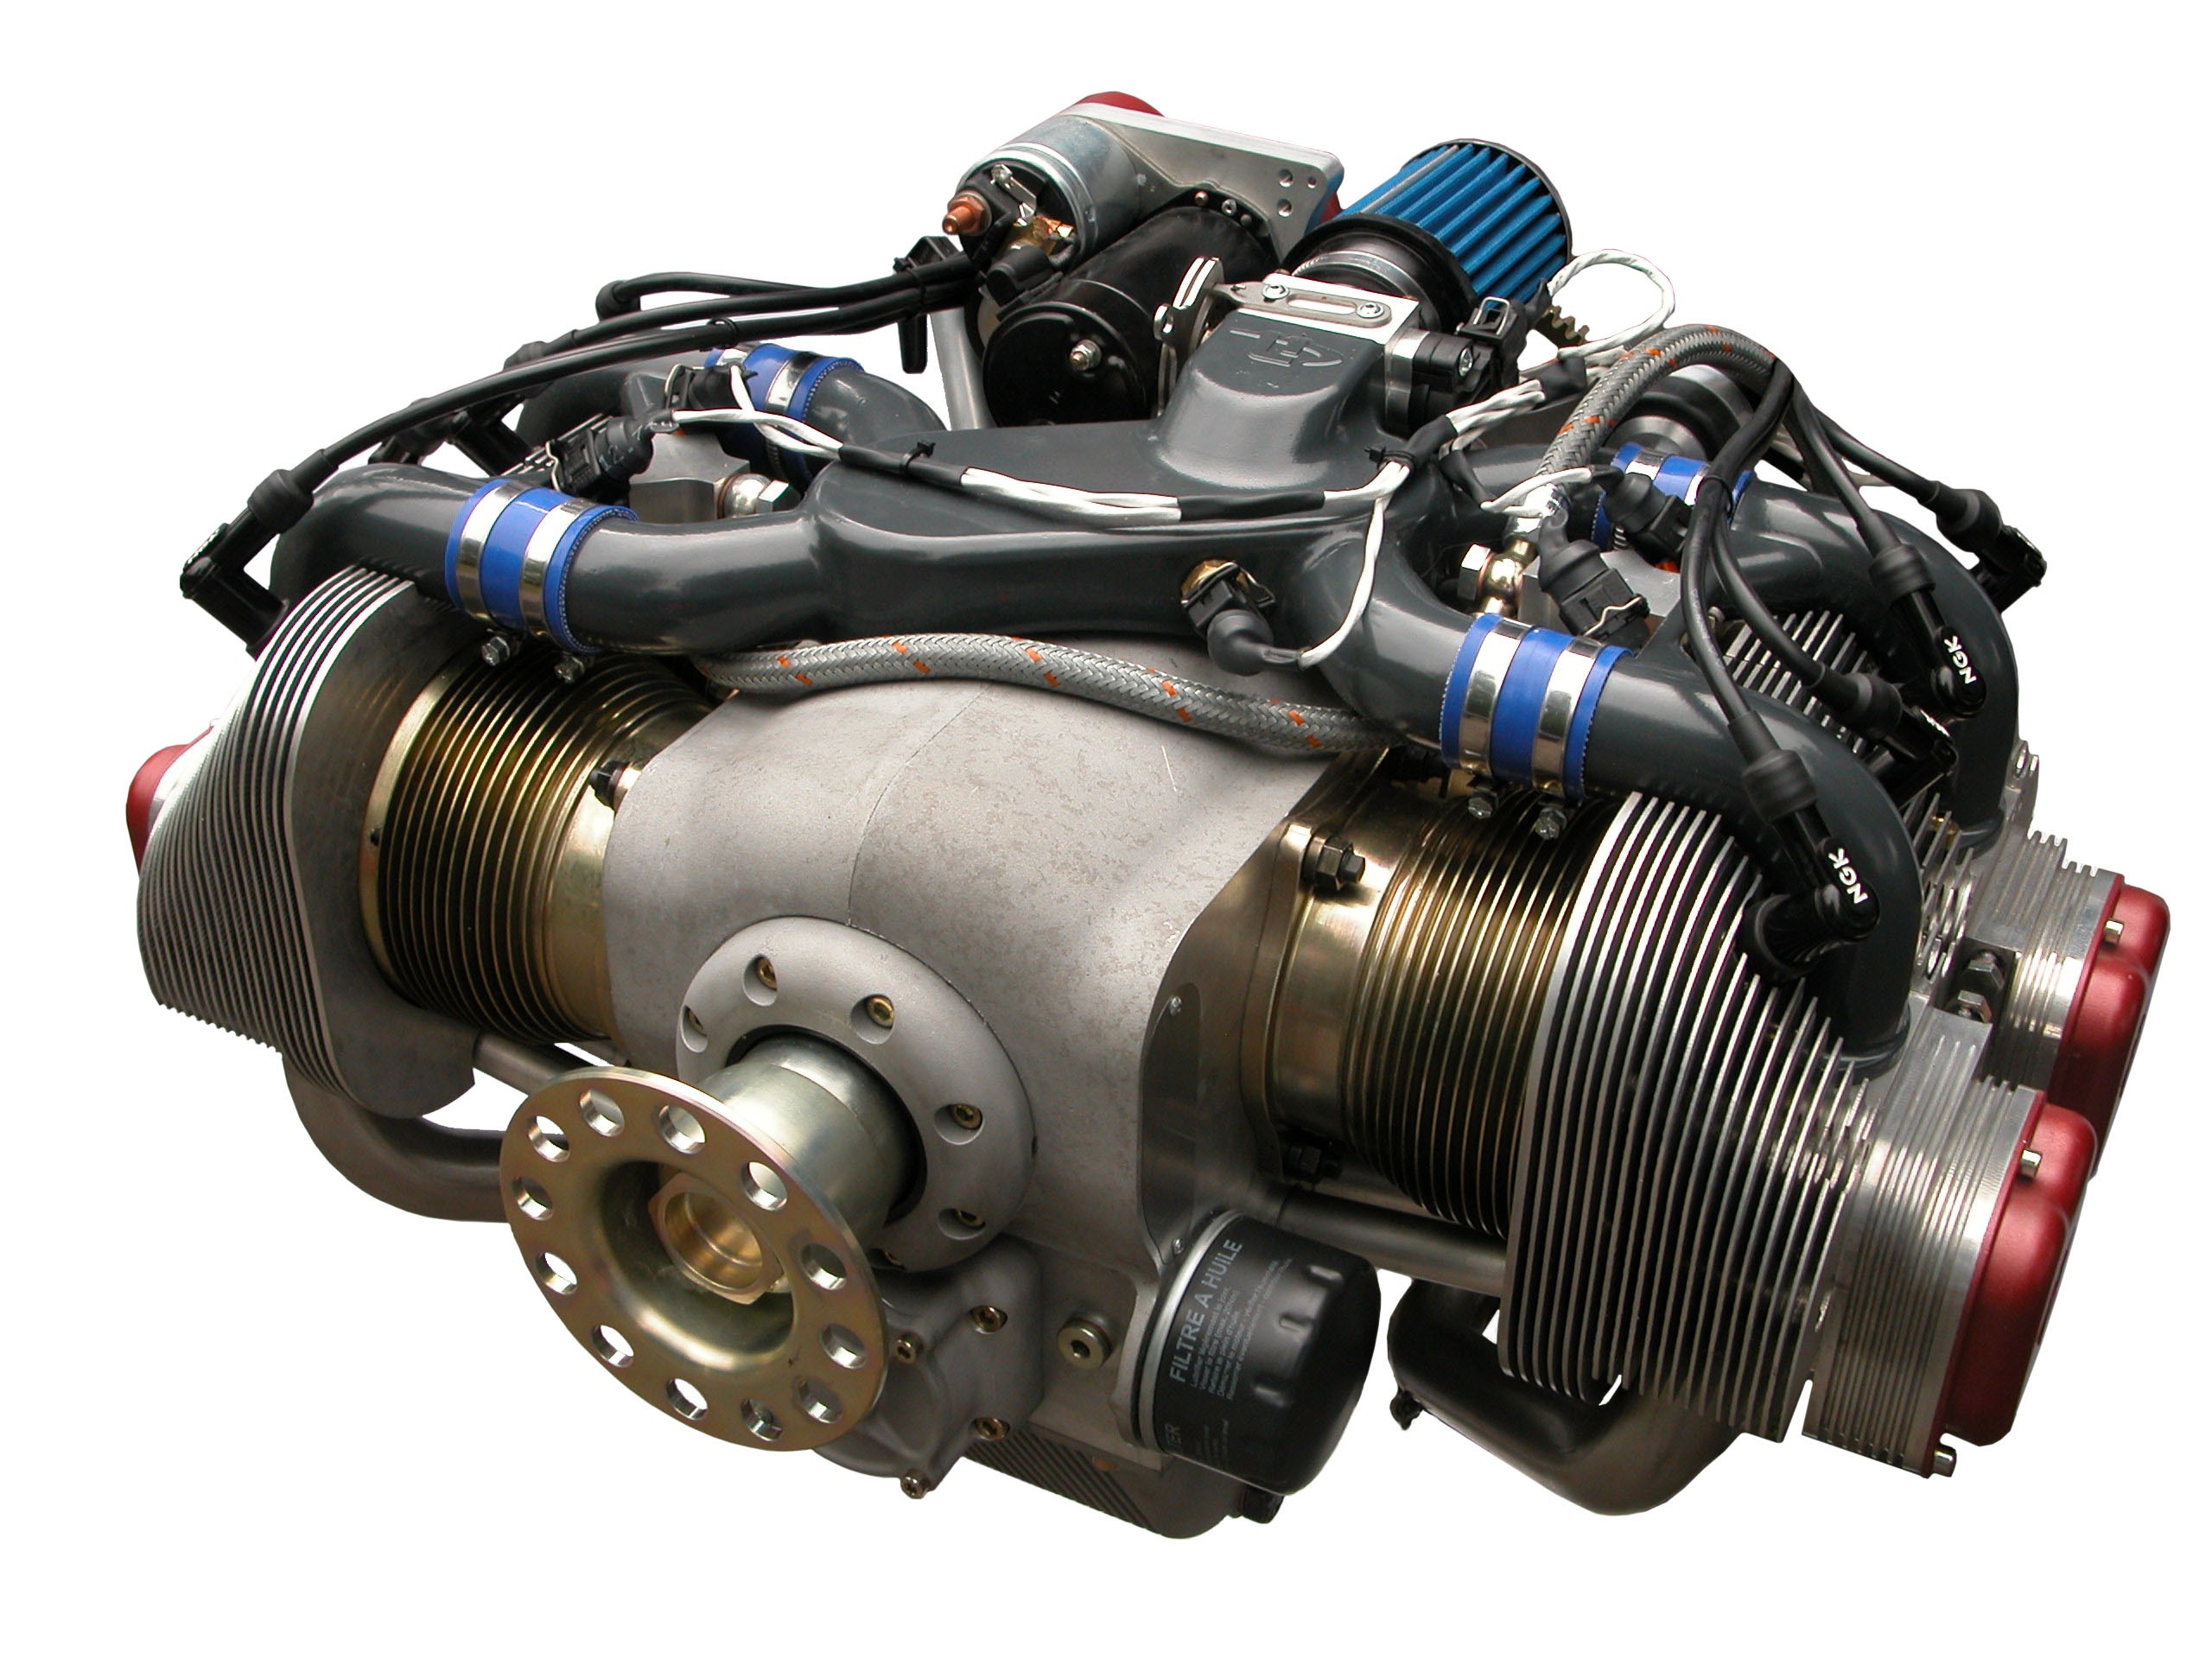 Scion Frs Boxer Engine Diagram Boxer Engine Diagram Flat Engine Engine Part Diagram Of Scion Frs Boxer Engine Diagram